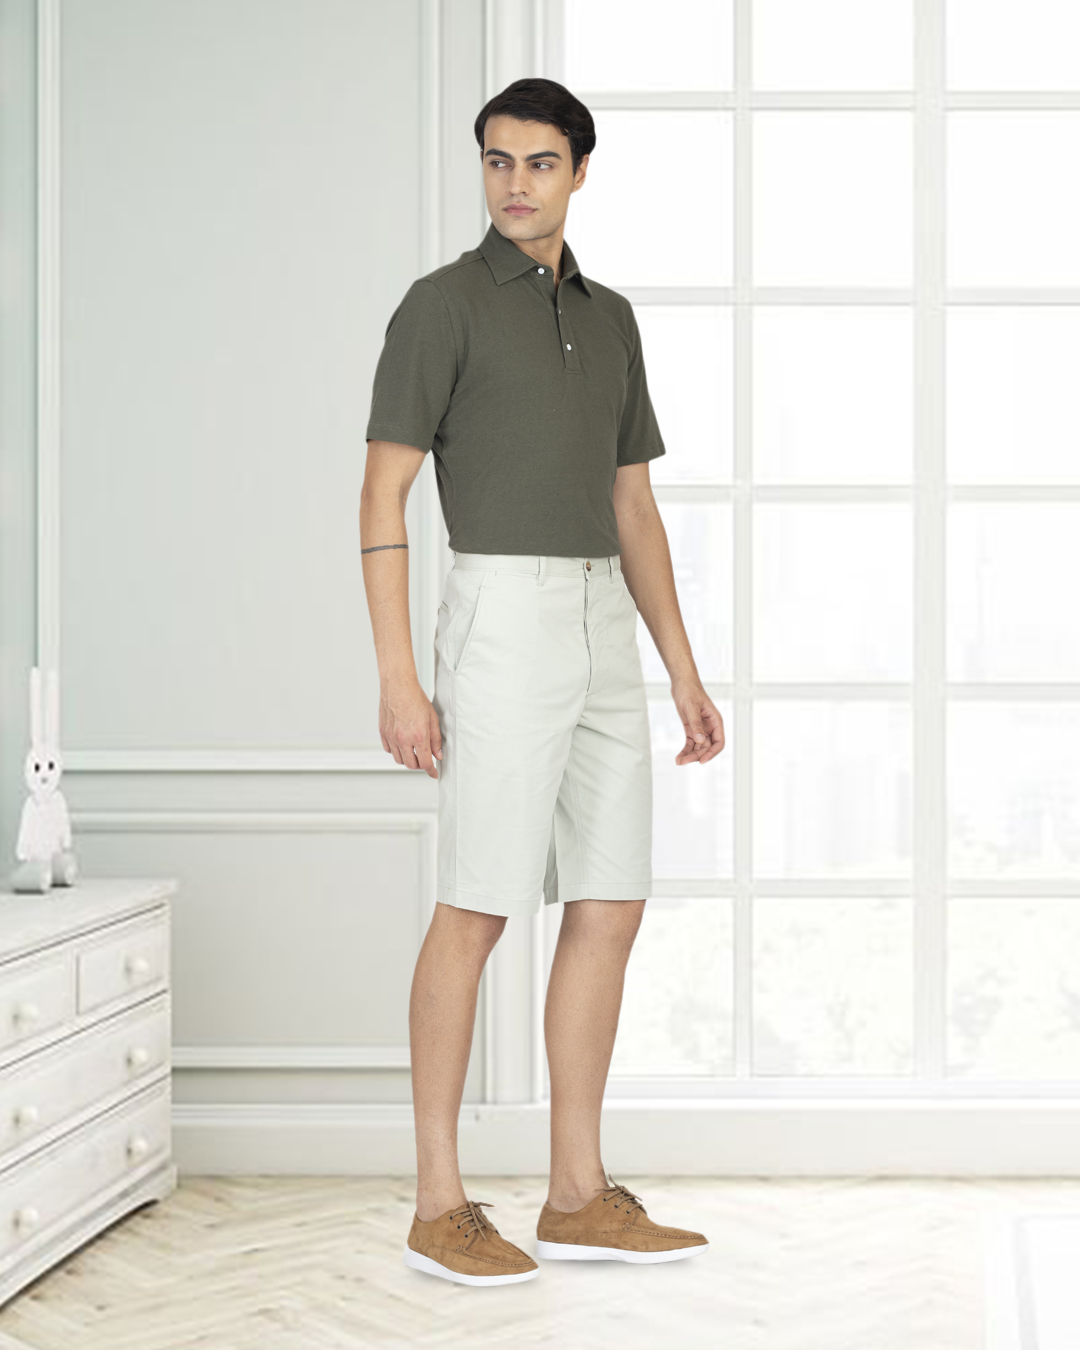 Model wearing custom Genoa shorts for men by Luxire in pale green wearing tan shoes